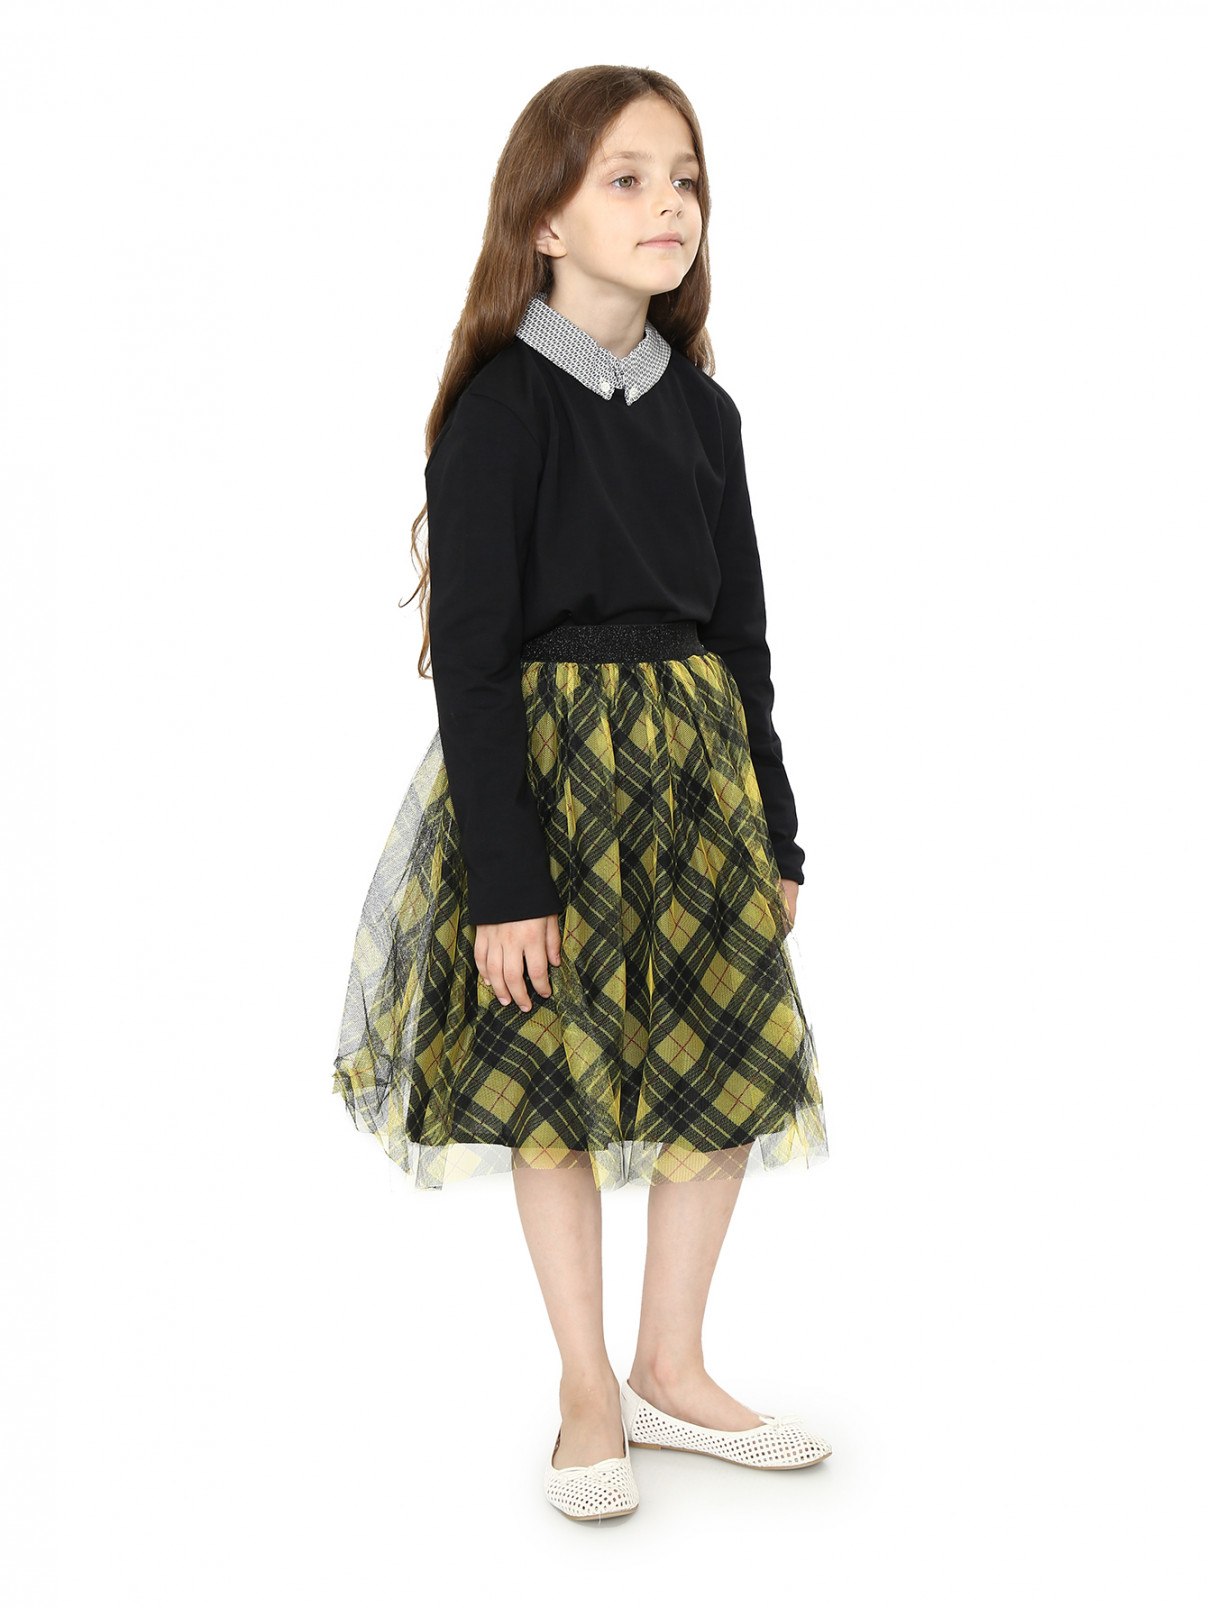 Пышная юбка из хлопка с узором "клетка" Gaultier Junior  –  Модель Общий вид  – Цвет:  Желтый